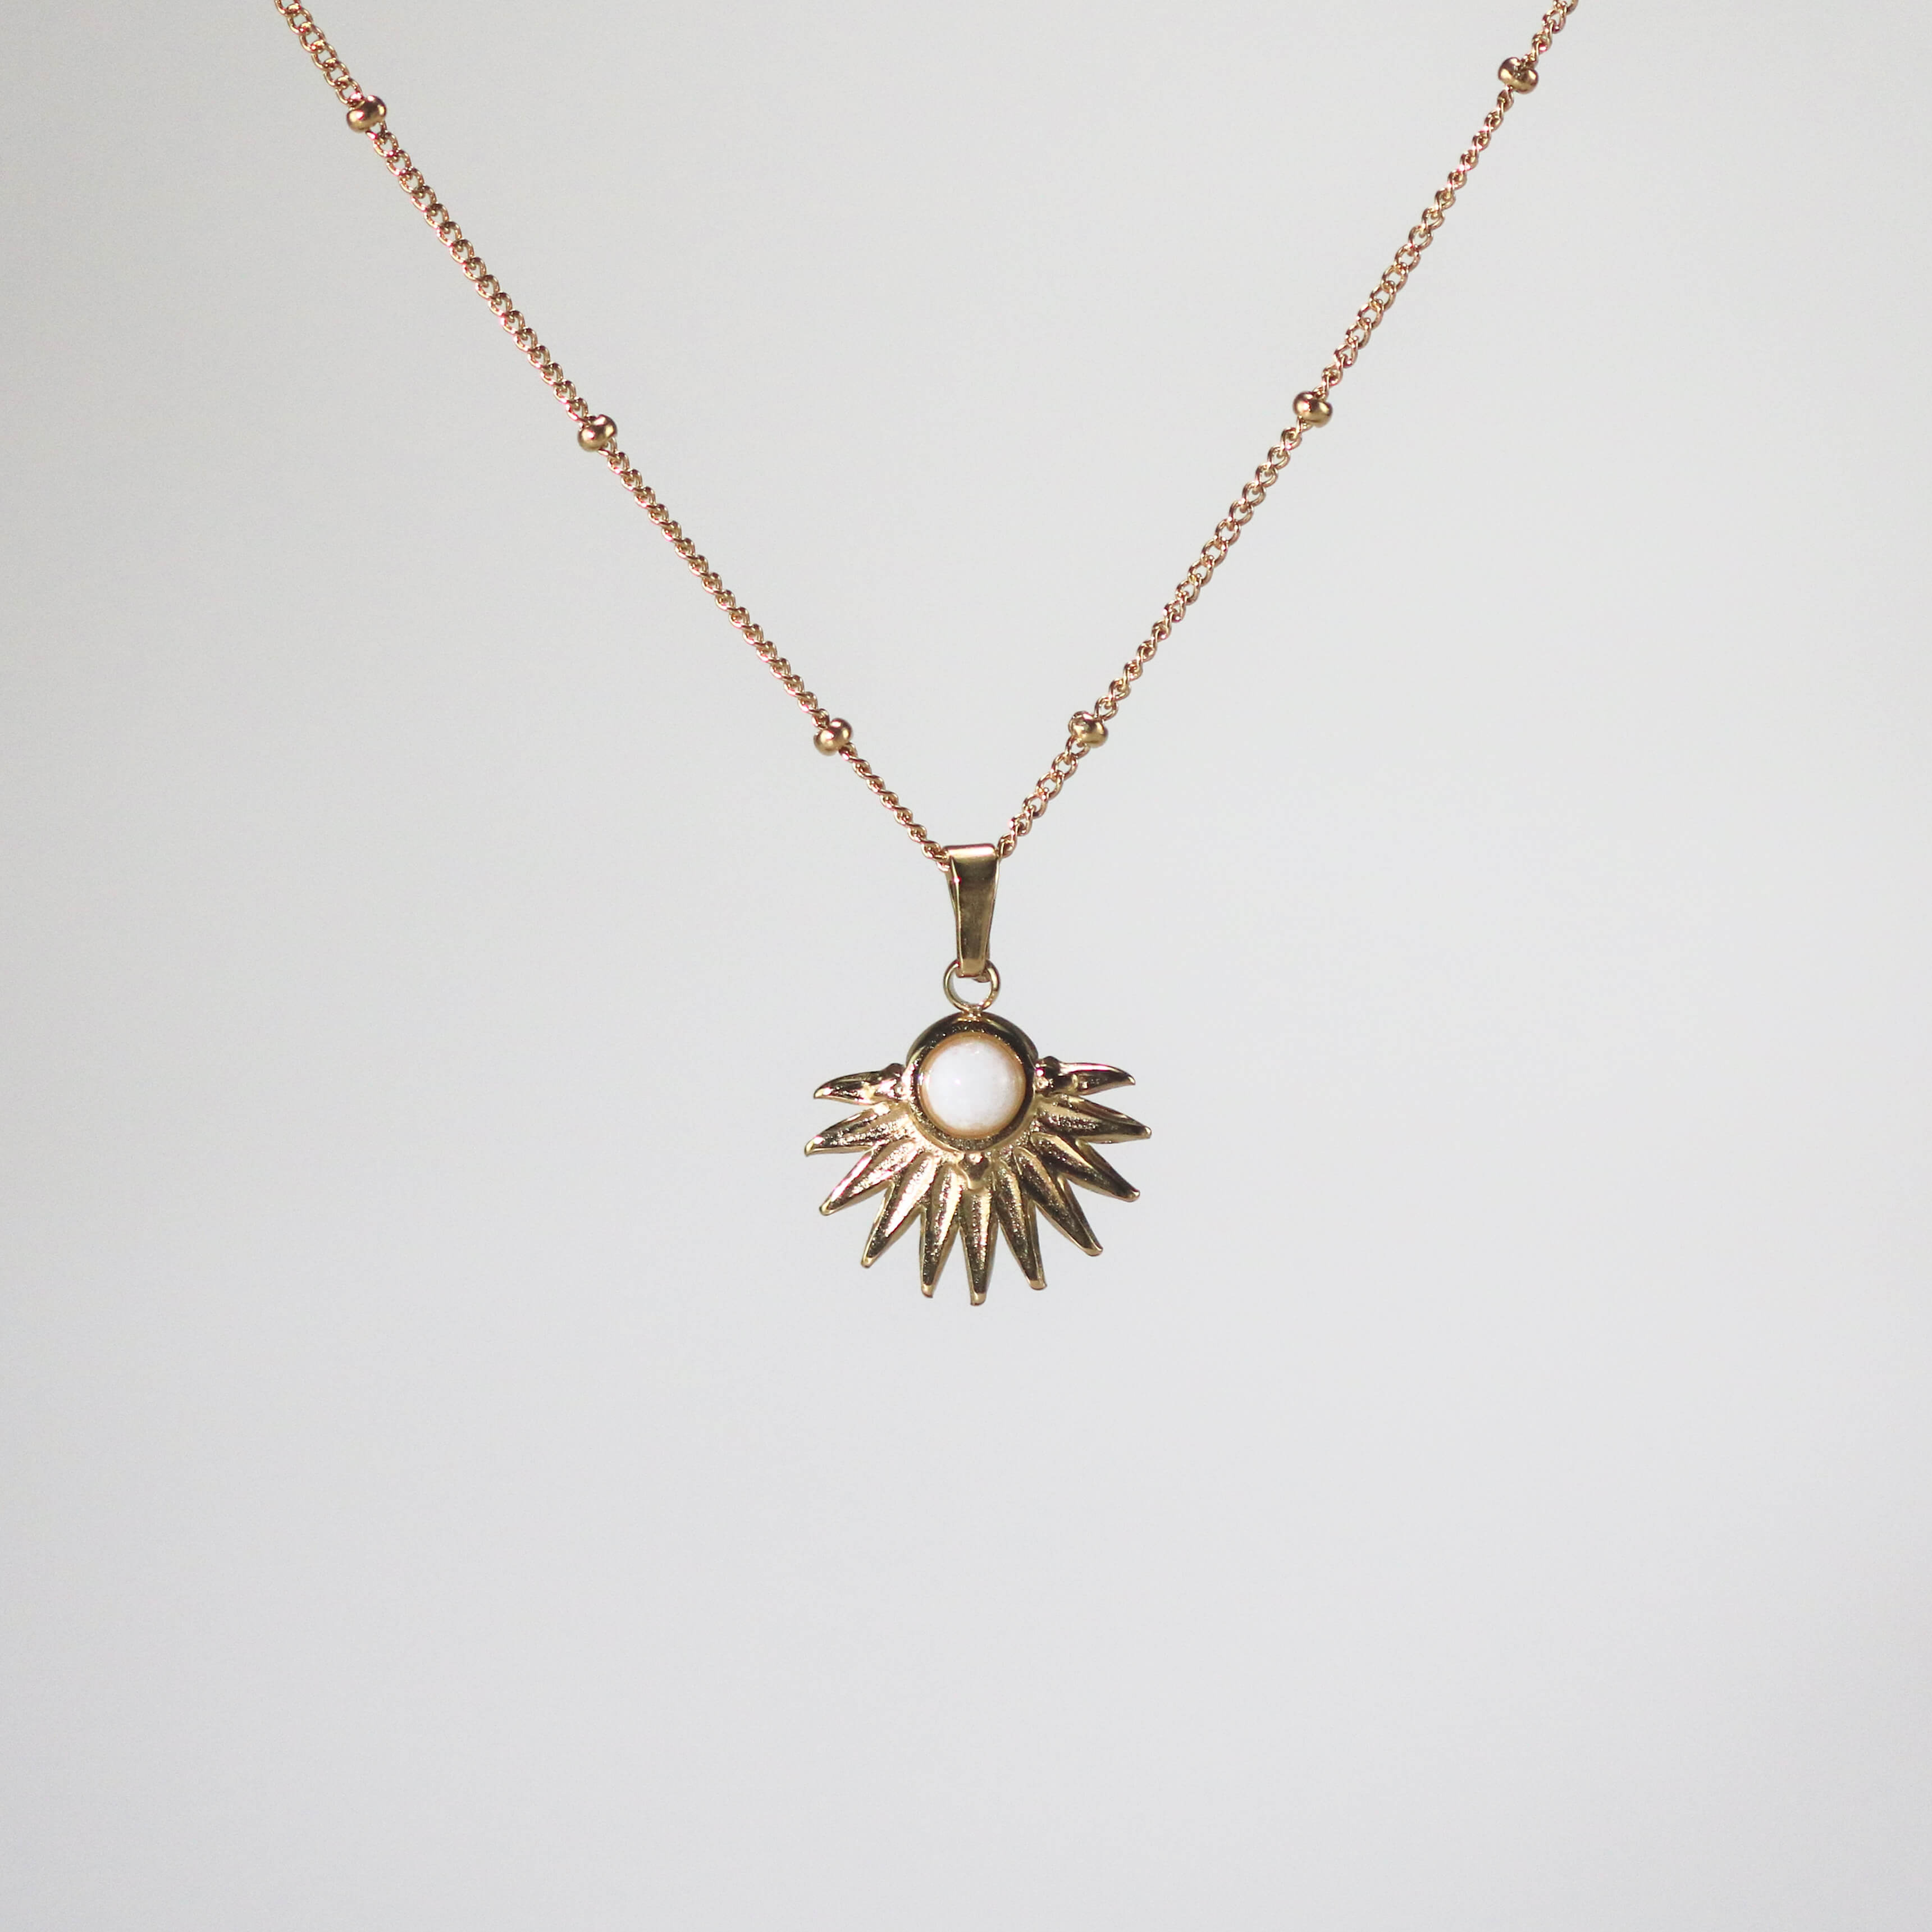 Meideya jewelry Sunburst White Opal Necklace